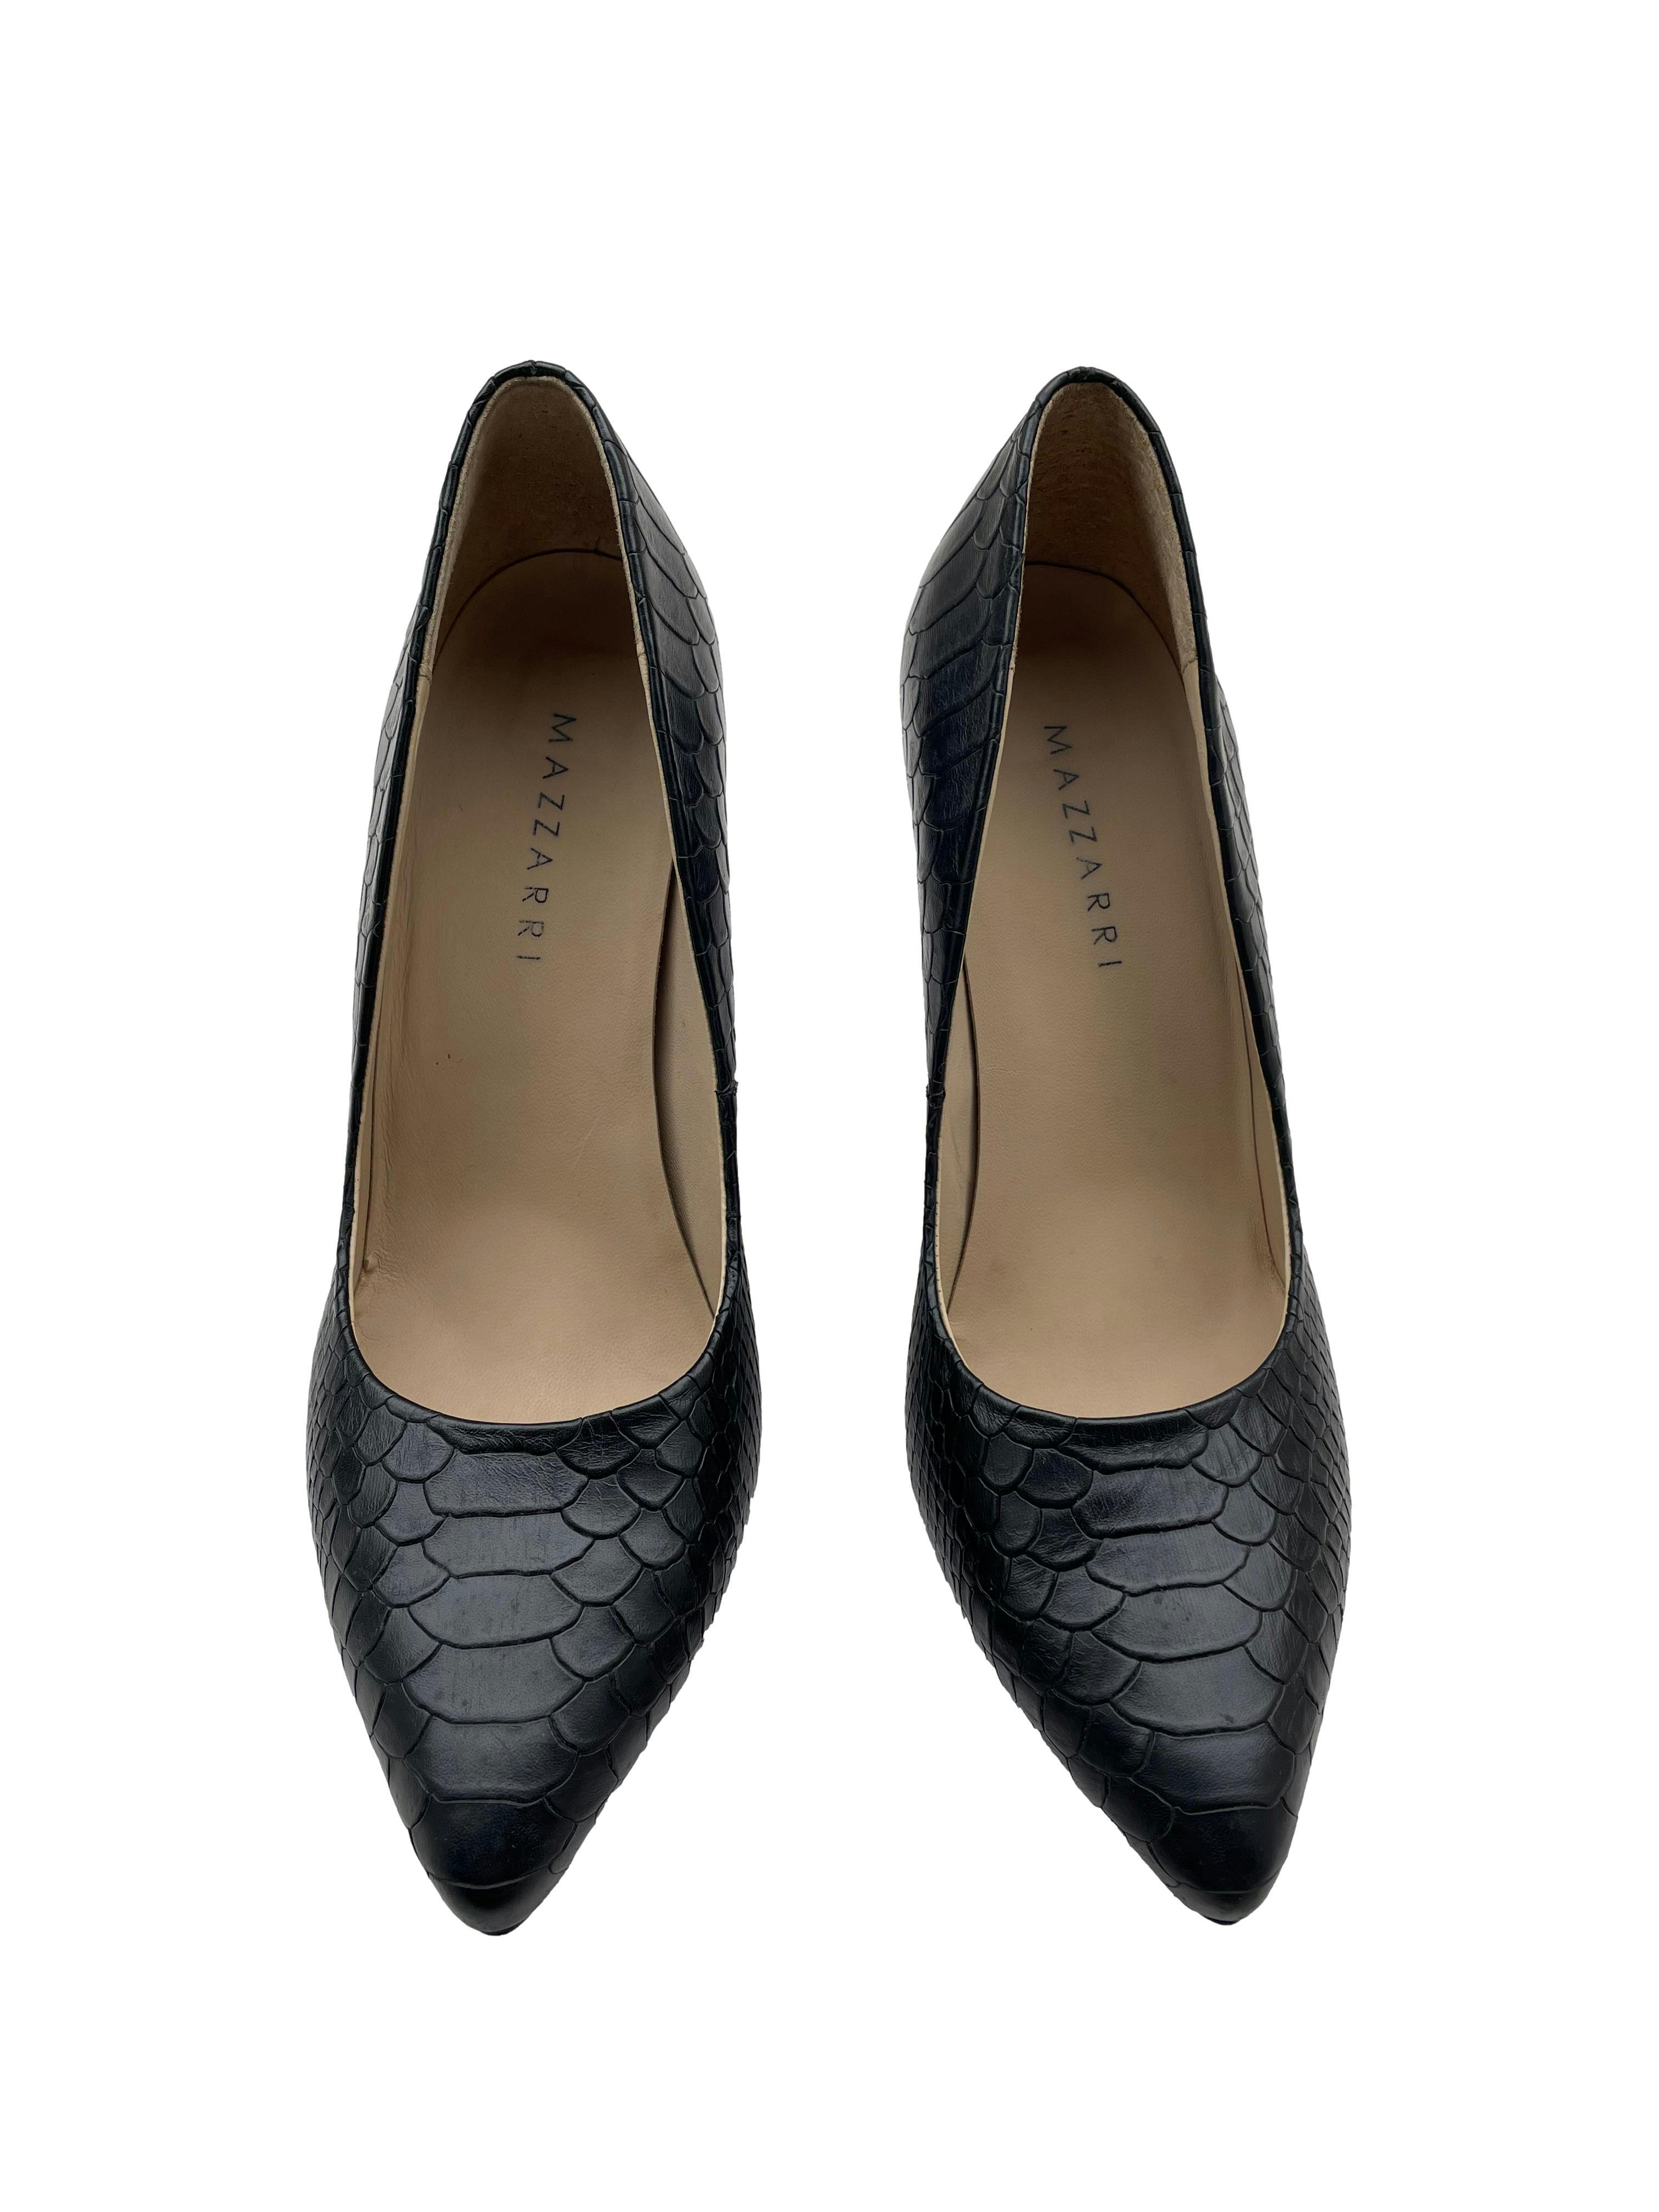 Zapatos tacos Mazzari de cuero negro con textura pitón, taco 10cm. Estado 9/10. Precio original S/ 319